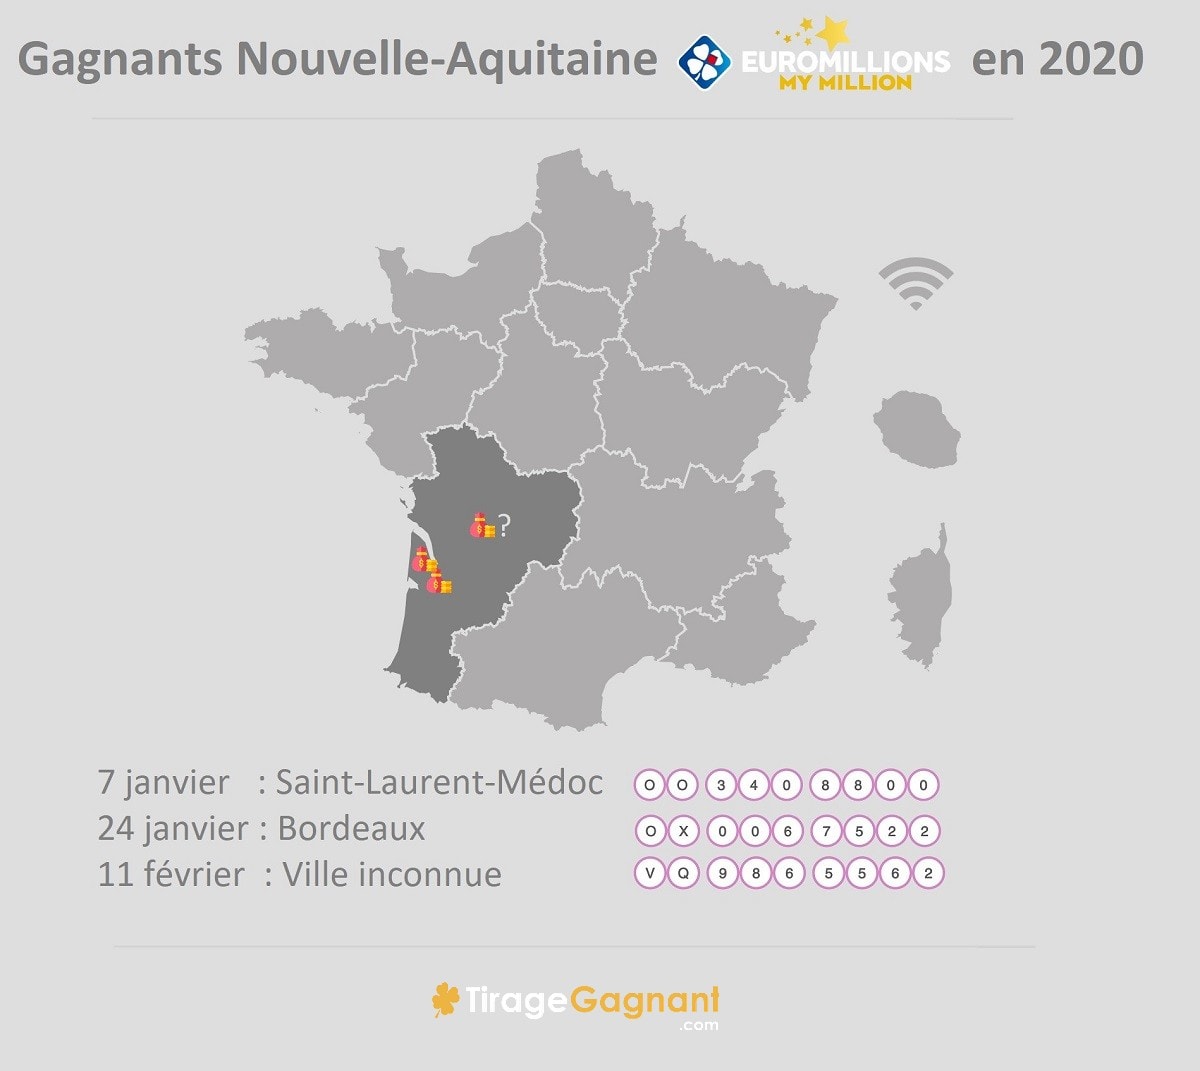 Gagnants Nouvelle Aquitaine 2020